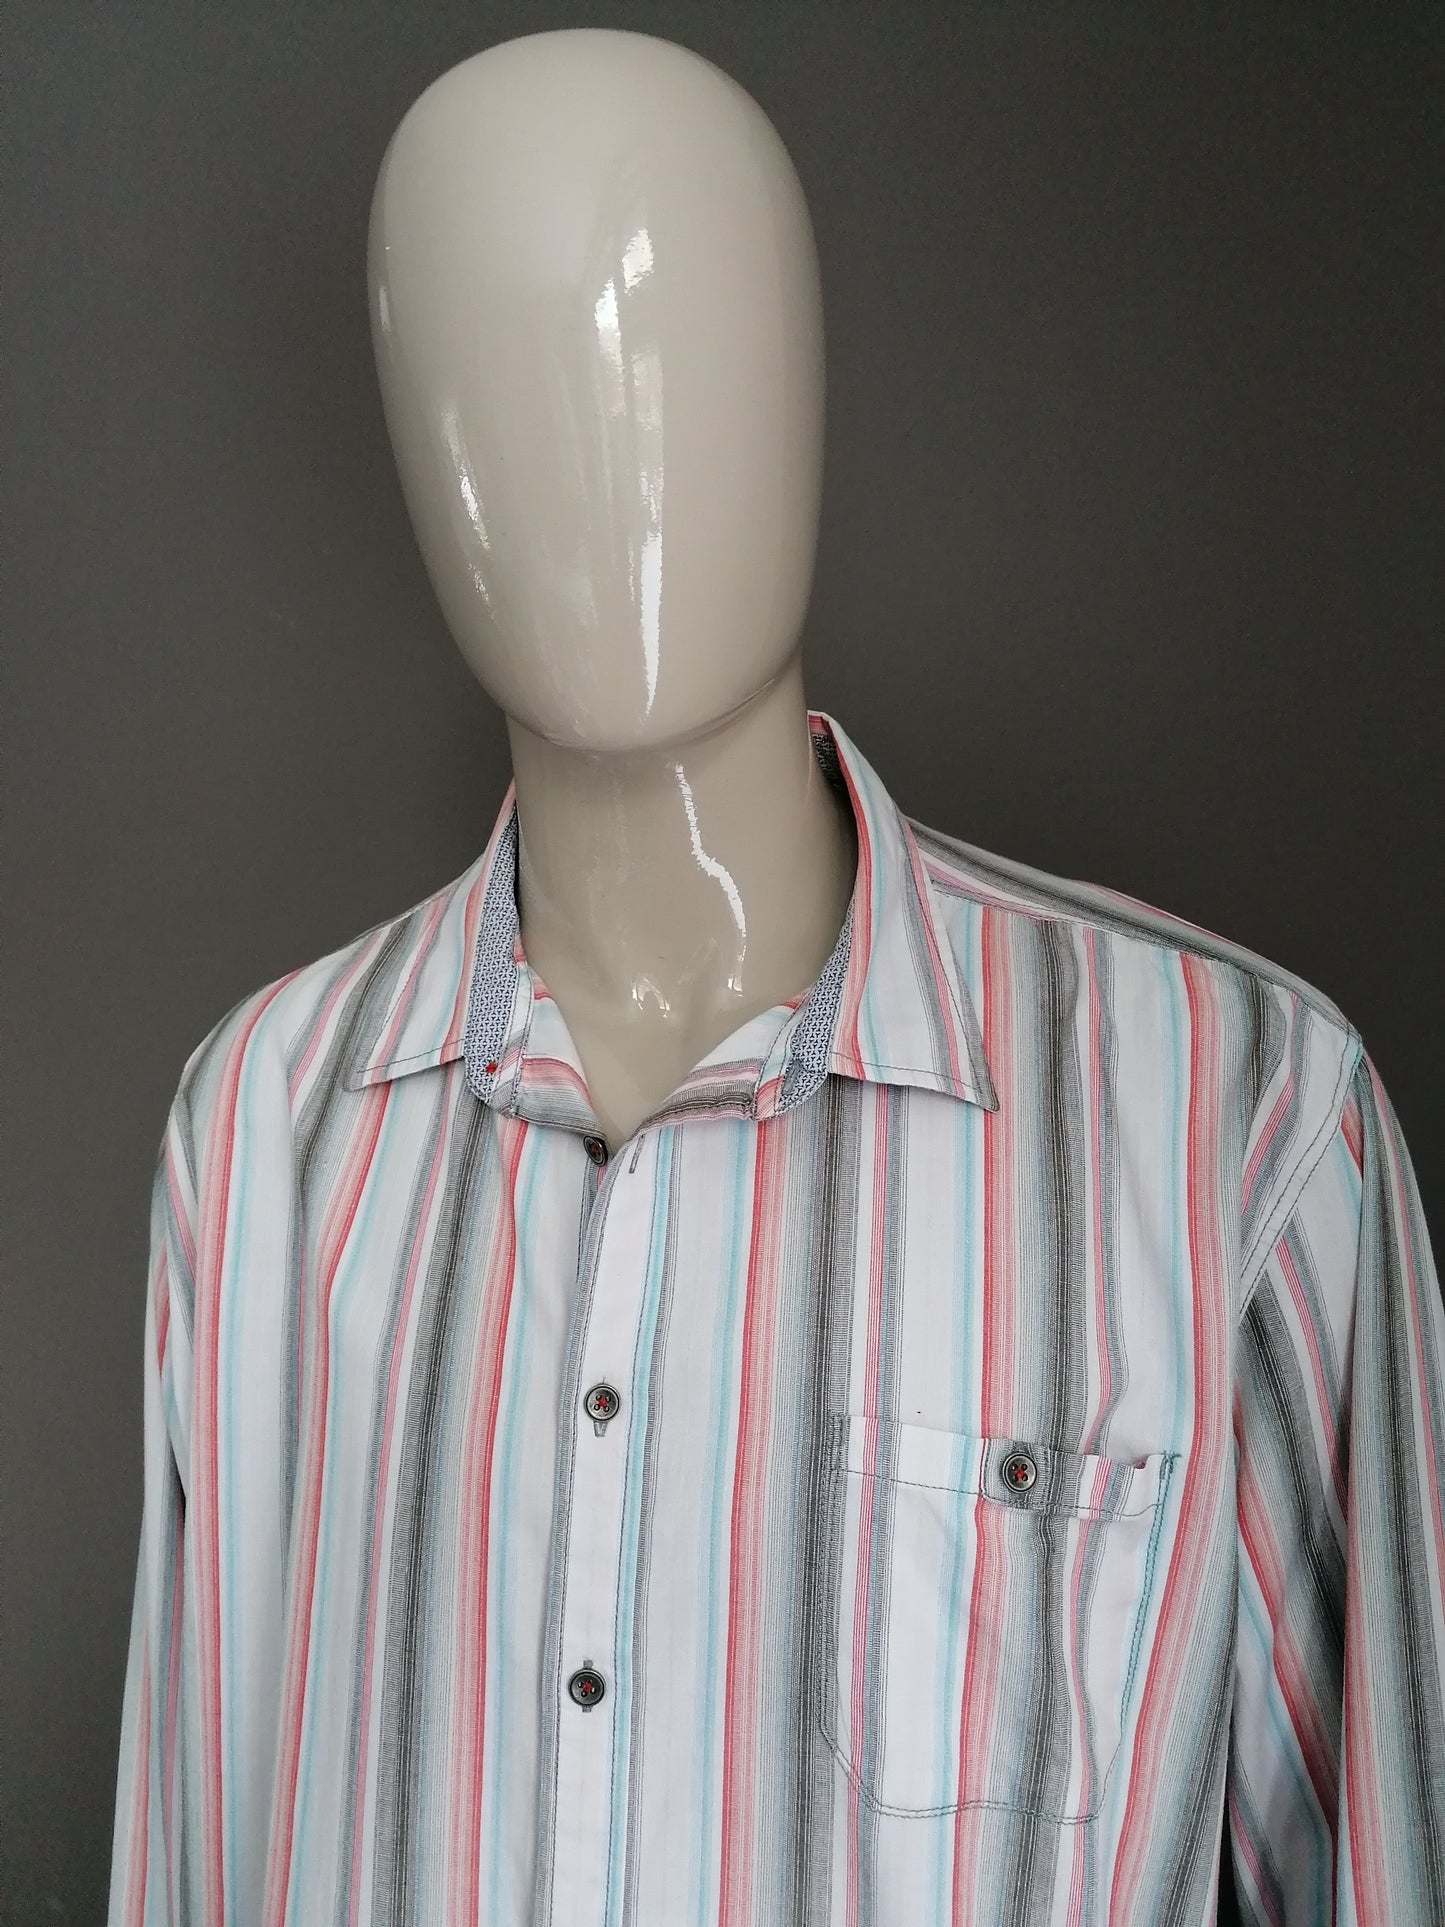 Mantray-Shirt. Rotes graues blaues Weiß gestreift. Größe XXXL / 3XL.